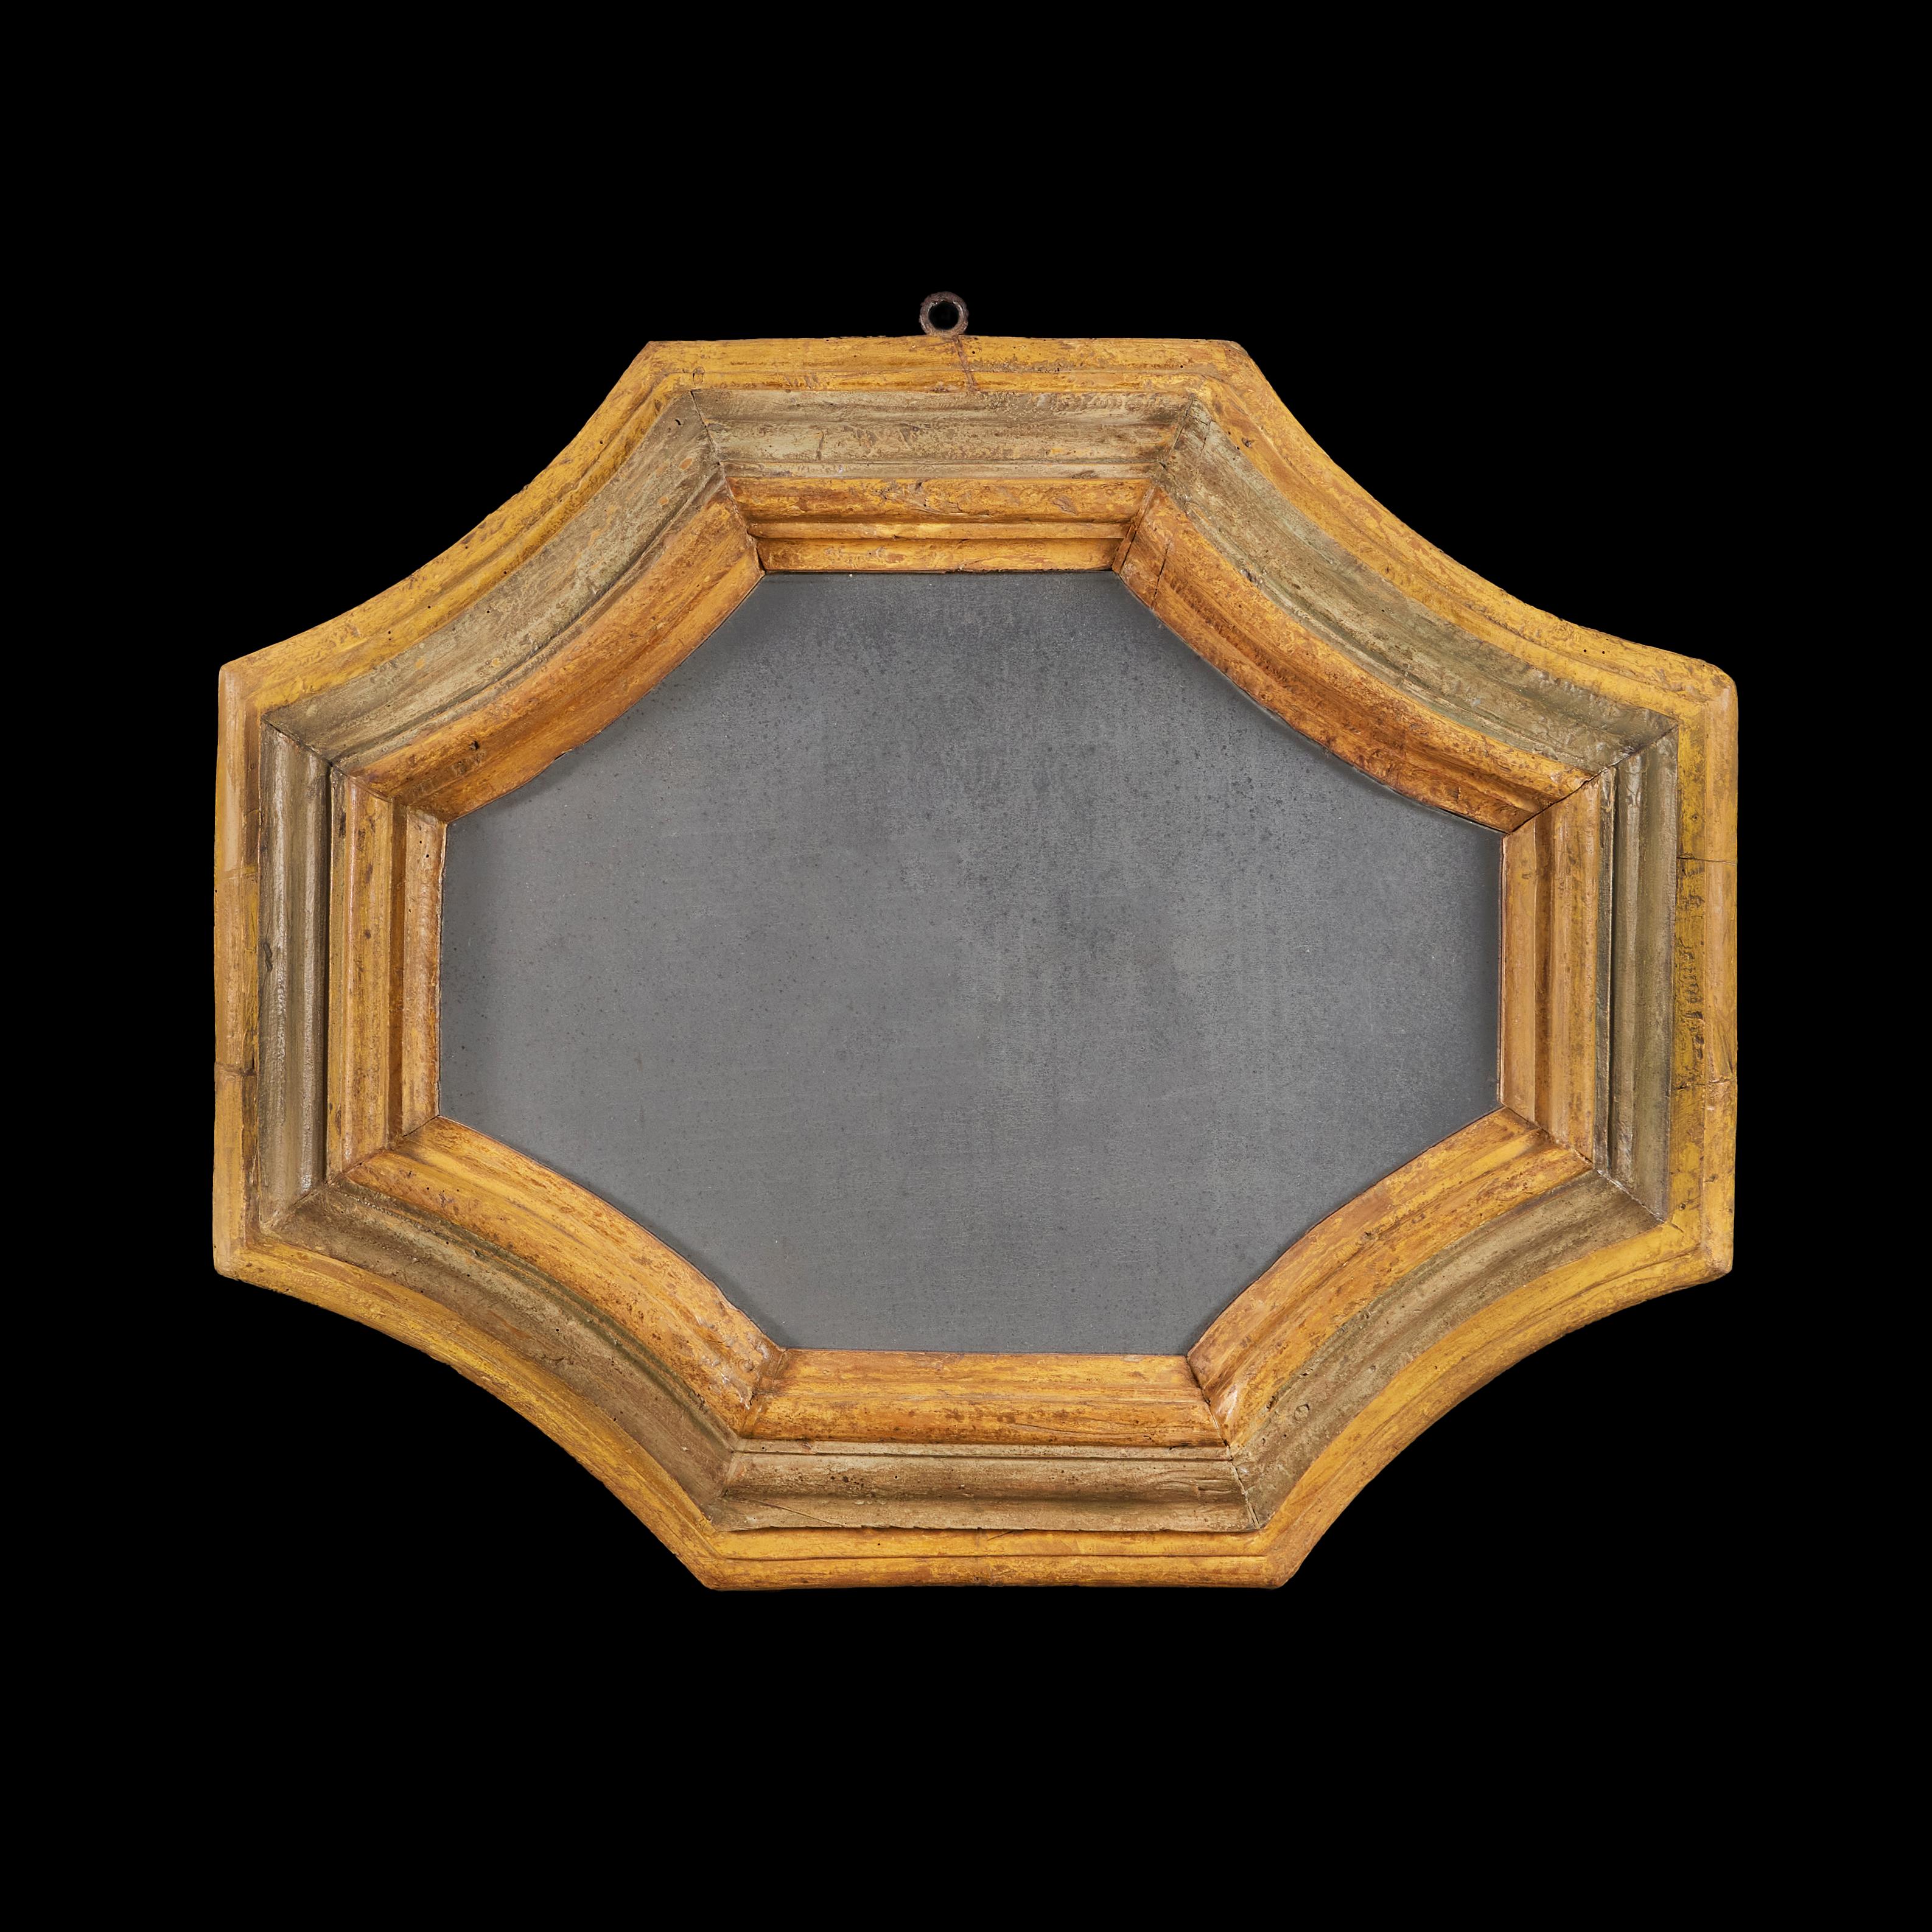 Italien, um 1750

Ein seltenes Paar toskanischer achteckiger Rahmen aus der Mitte des achtzehnten Jahrhunderts, mit Resten von grüner Farbe und gelbem Ocker, die Rahmen mit abgestuften Leisten. 

Höhe    78.00cm
Breite      94.00cm
Tiefe      7.00cm